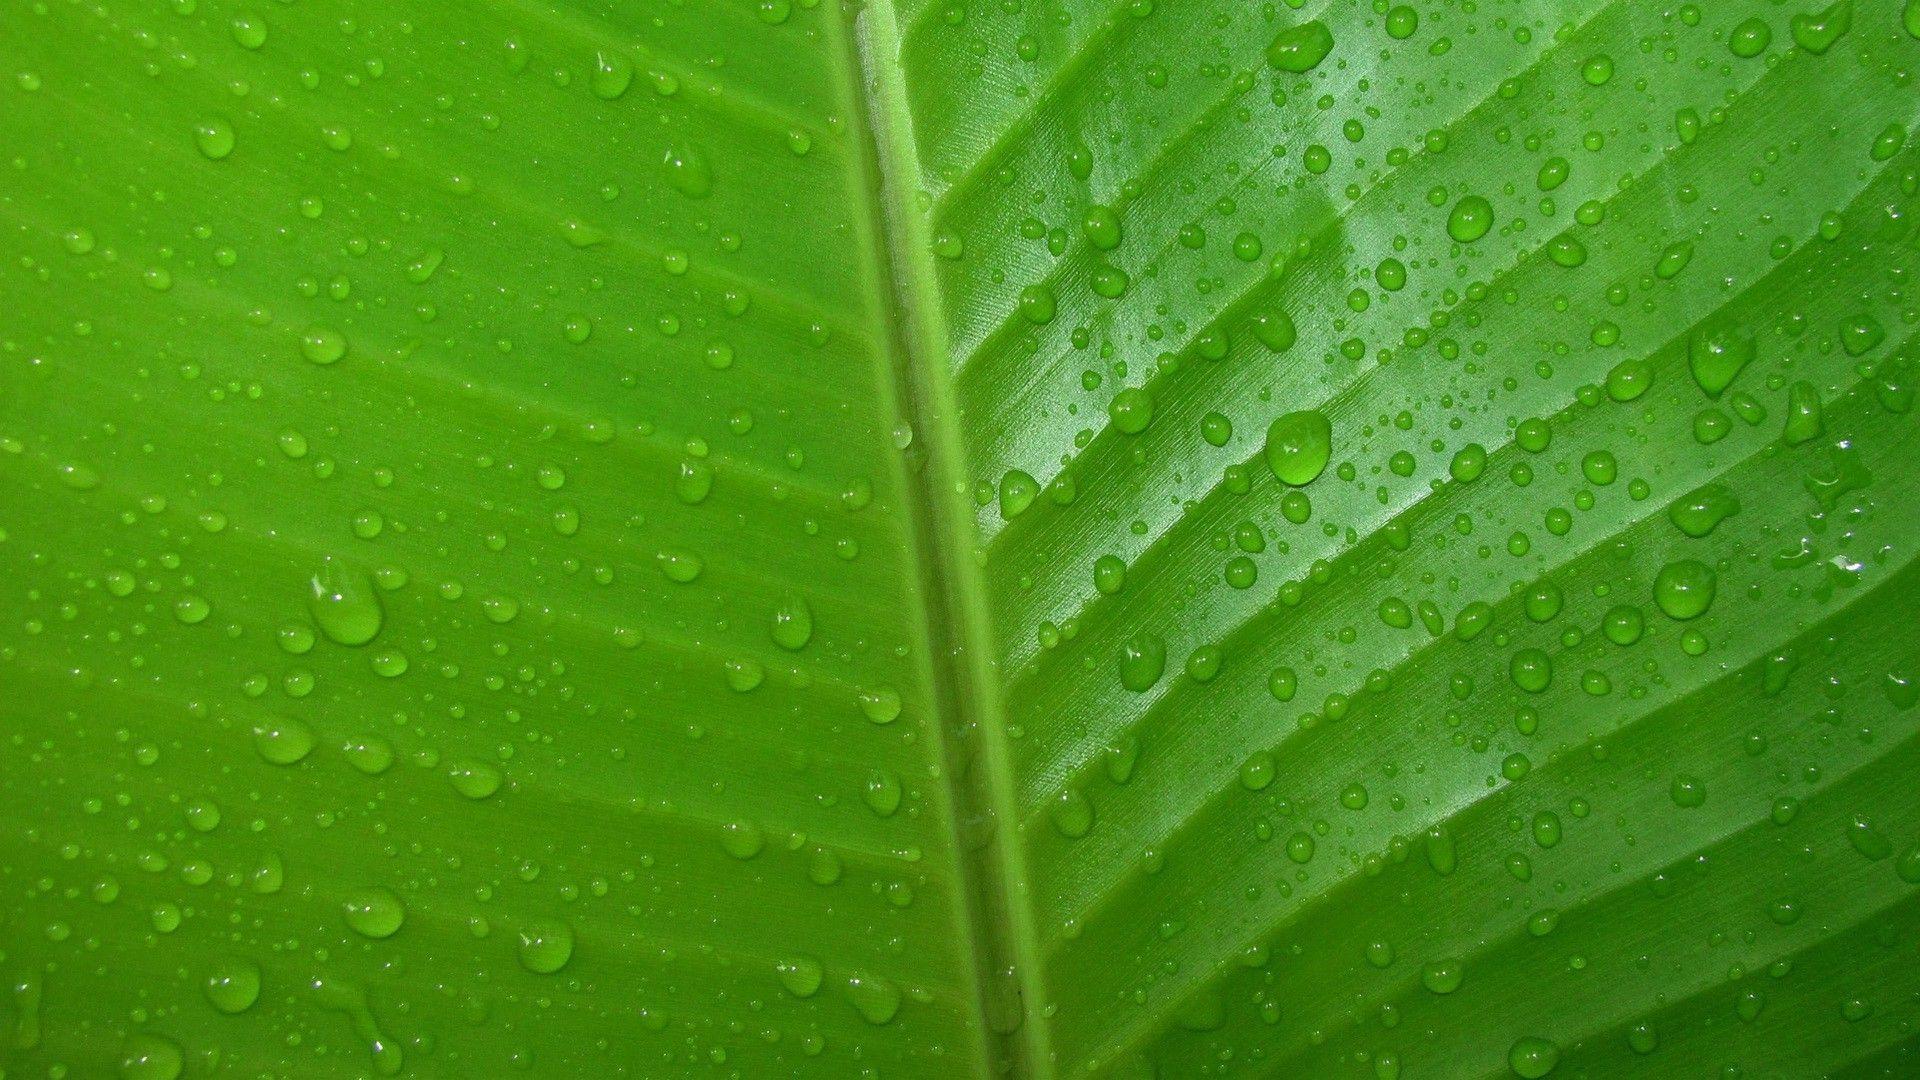 Dew drop on the leaf wallpaper. Wallpaper Wide HD